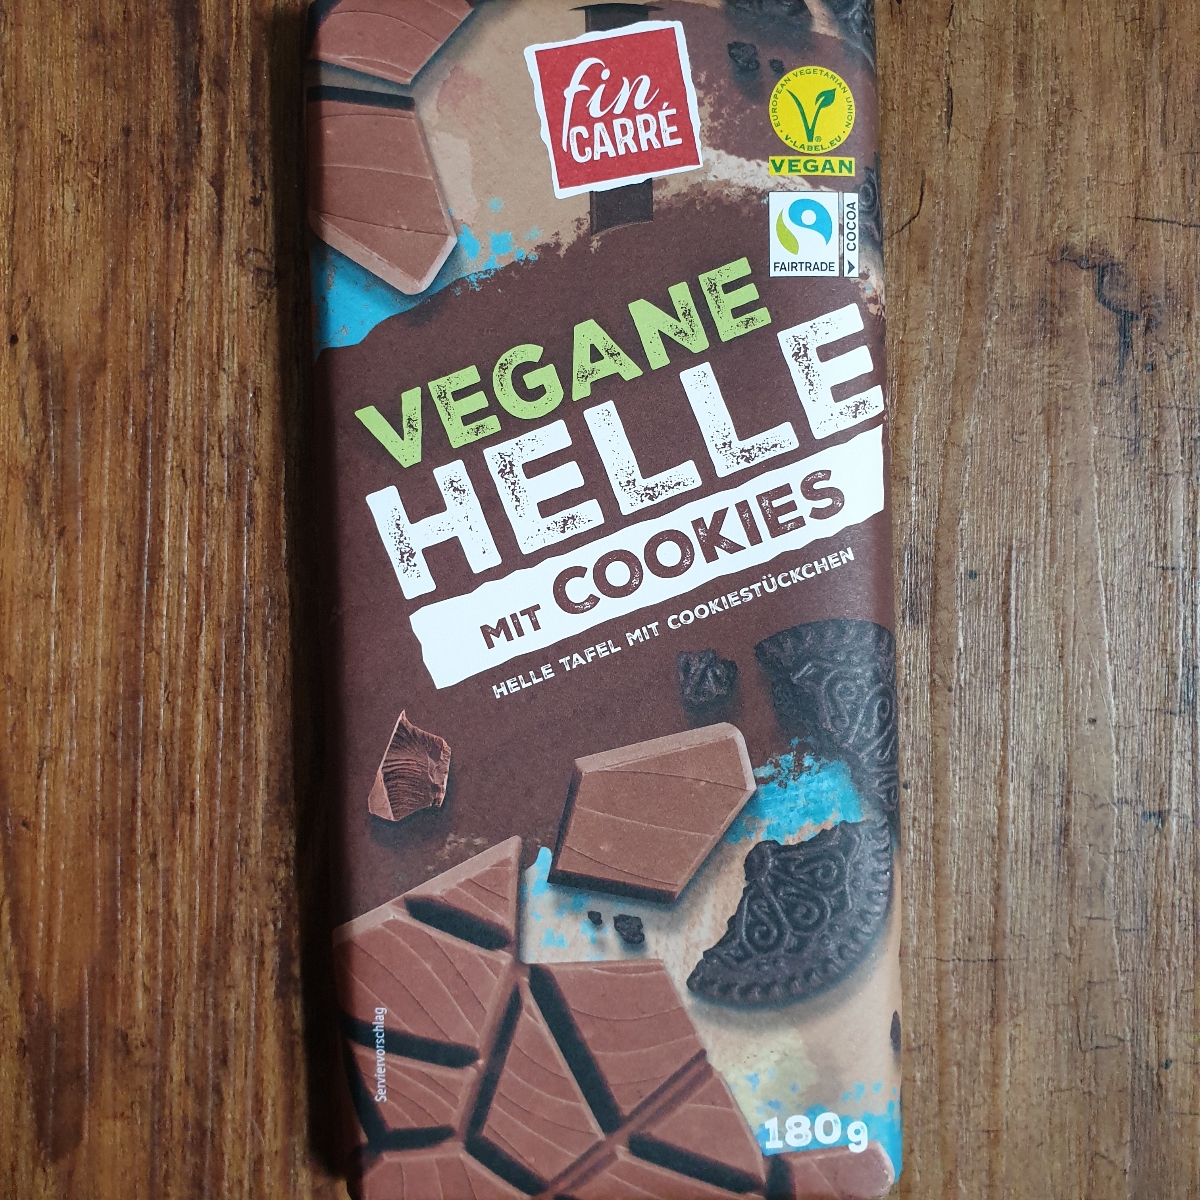 abillion Fin Carré | Cookies Review Helle Vegane mit